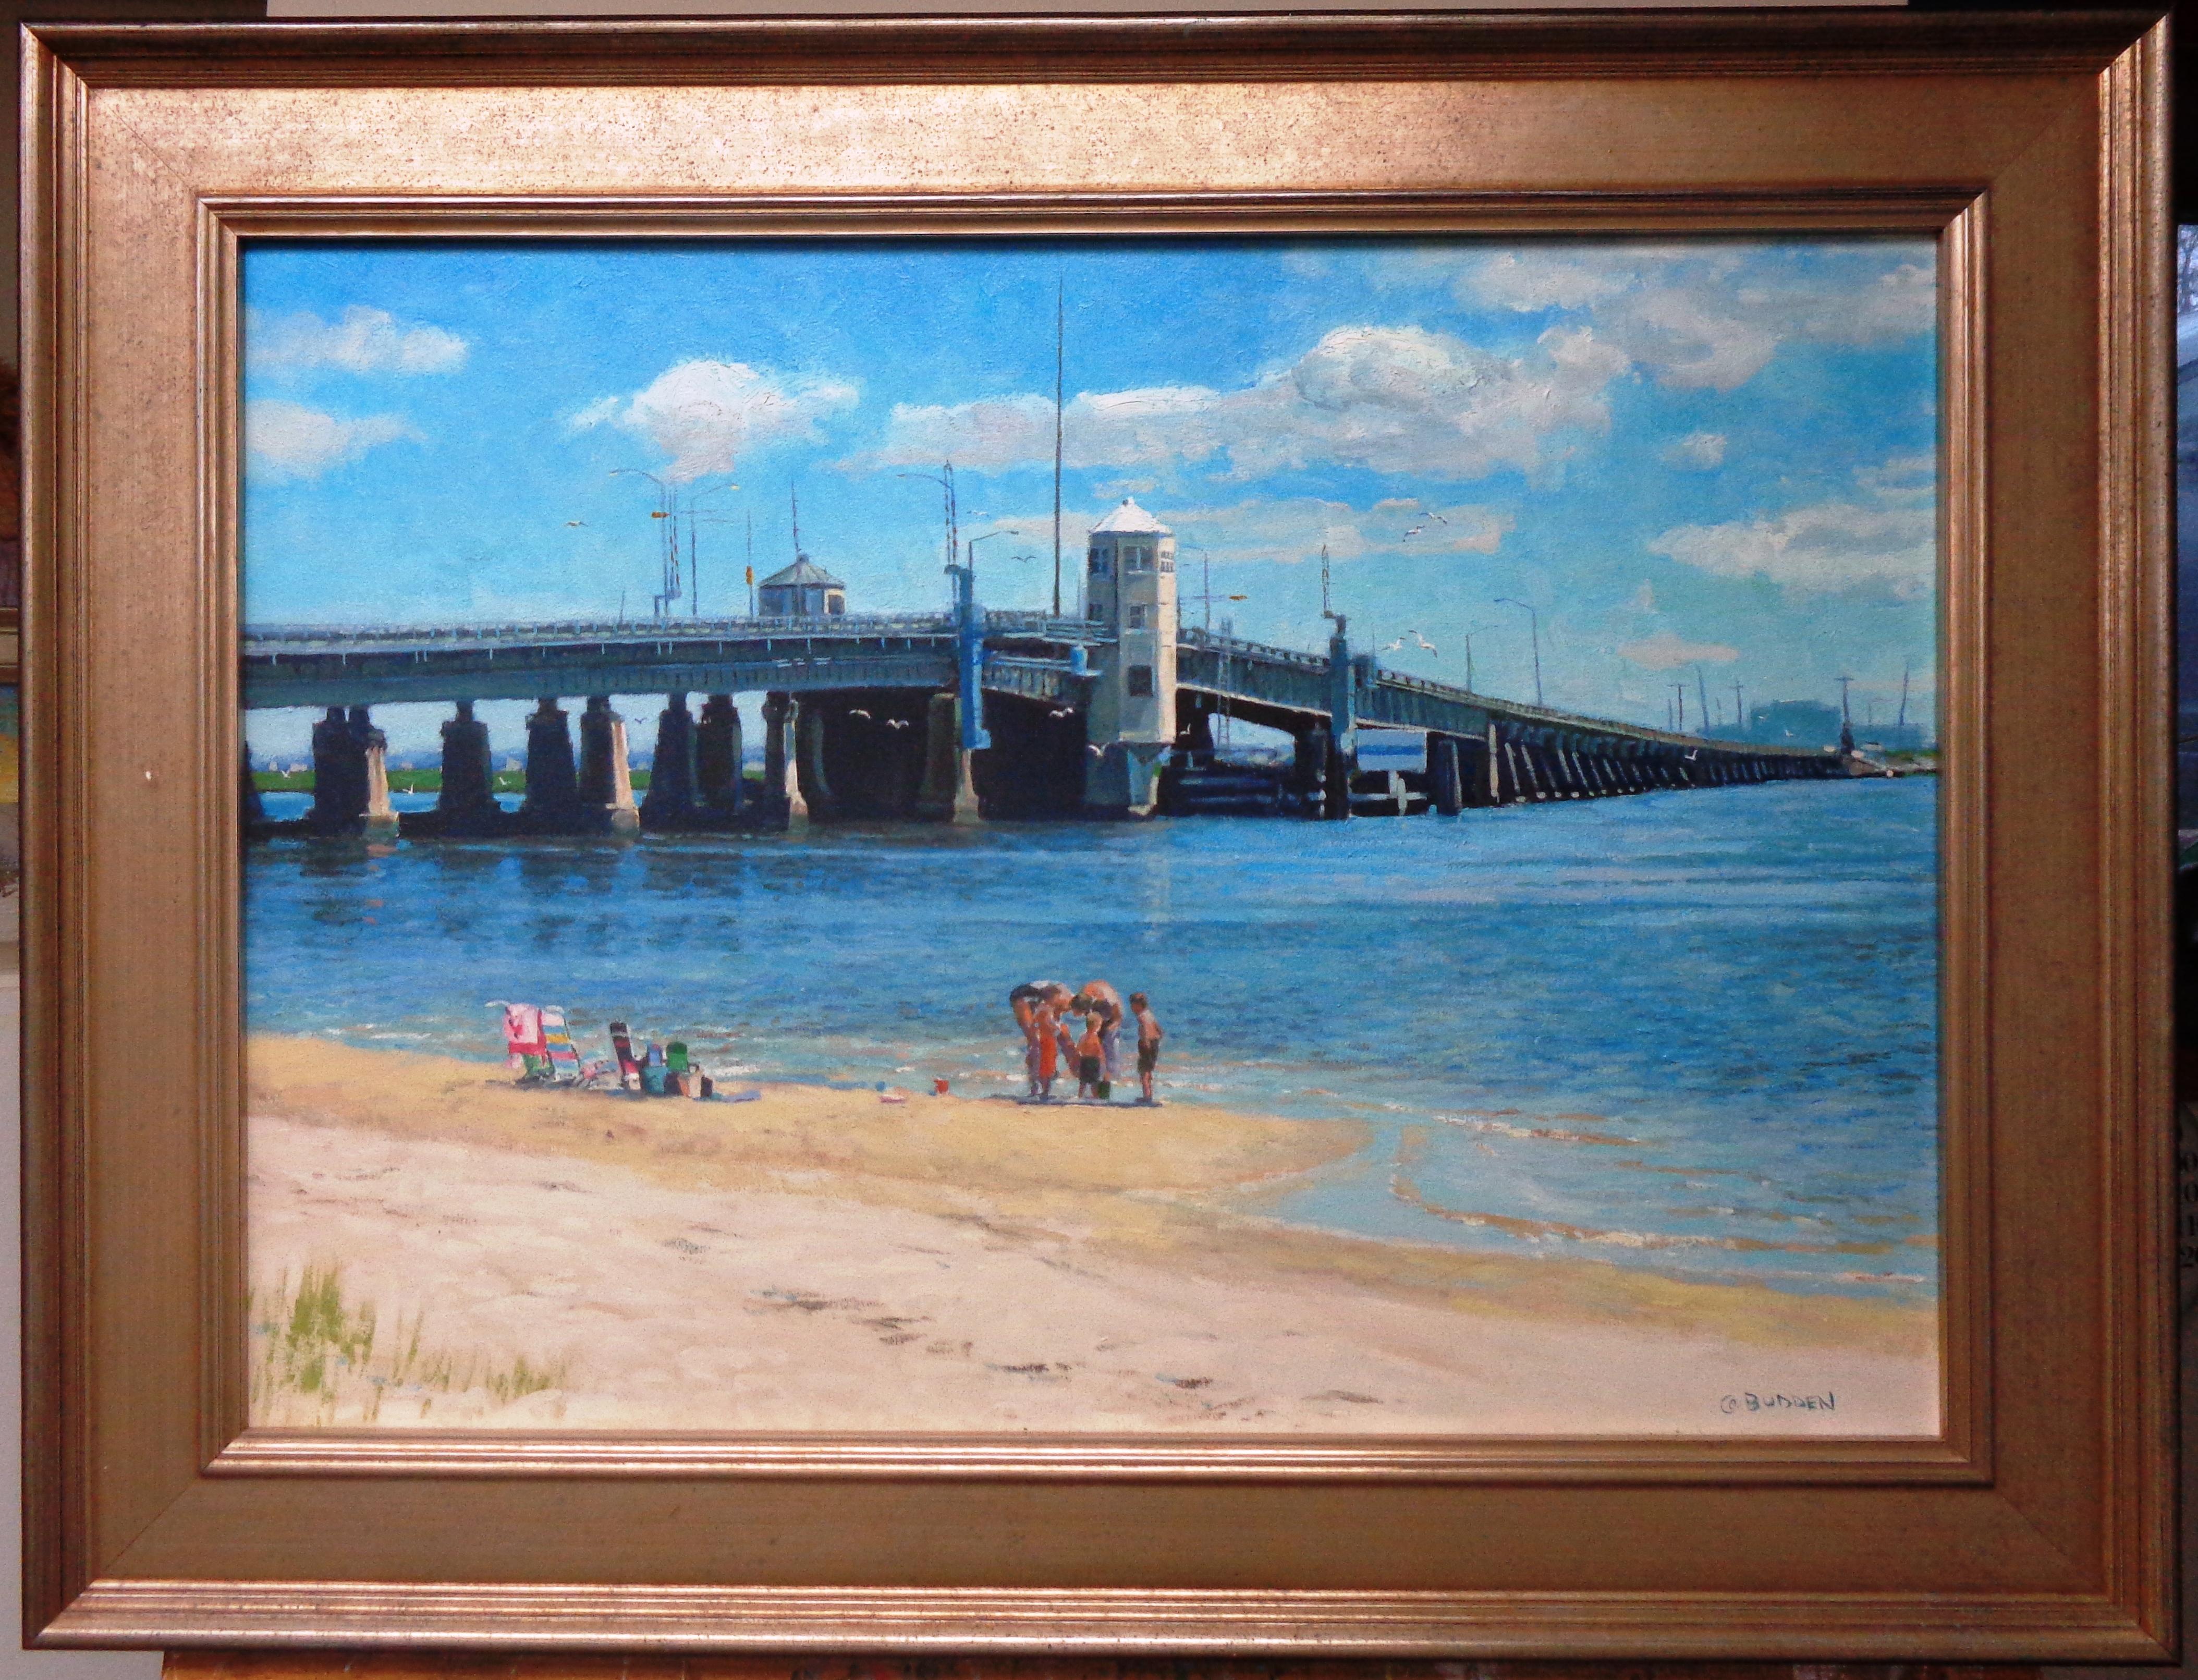 Original Summers Point Bridge nach Ocean City, NJ
Öl/Leinwand
20 x 28 Bildgröße 26 x 34 gerahmt (Rahmen weist Altersspuren auf, etc.)
Ein Ölgemälde auf Leinwand des preisgekrönten zeitgenössischen Künstlers Michael Budden, das eine einzigartige